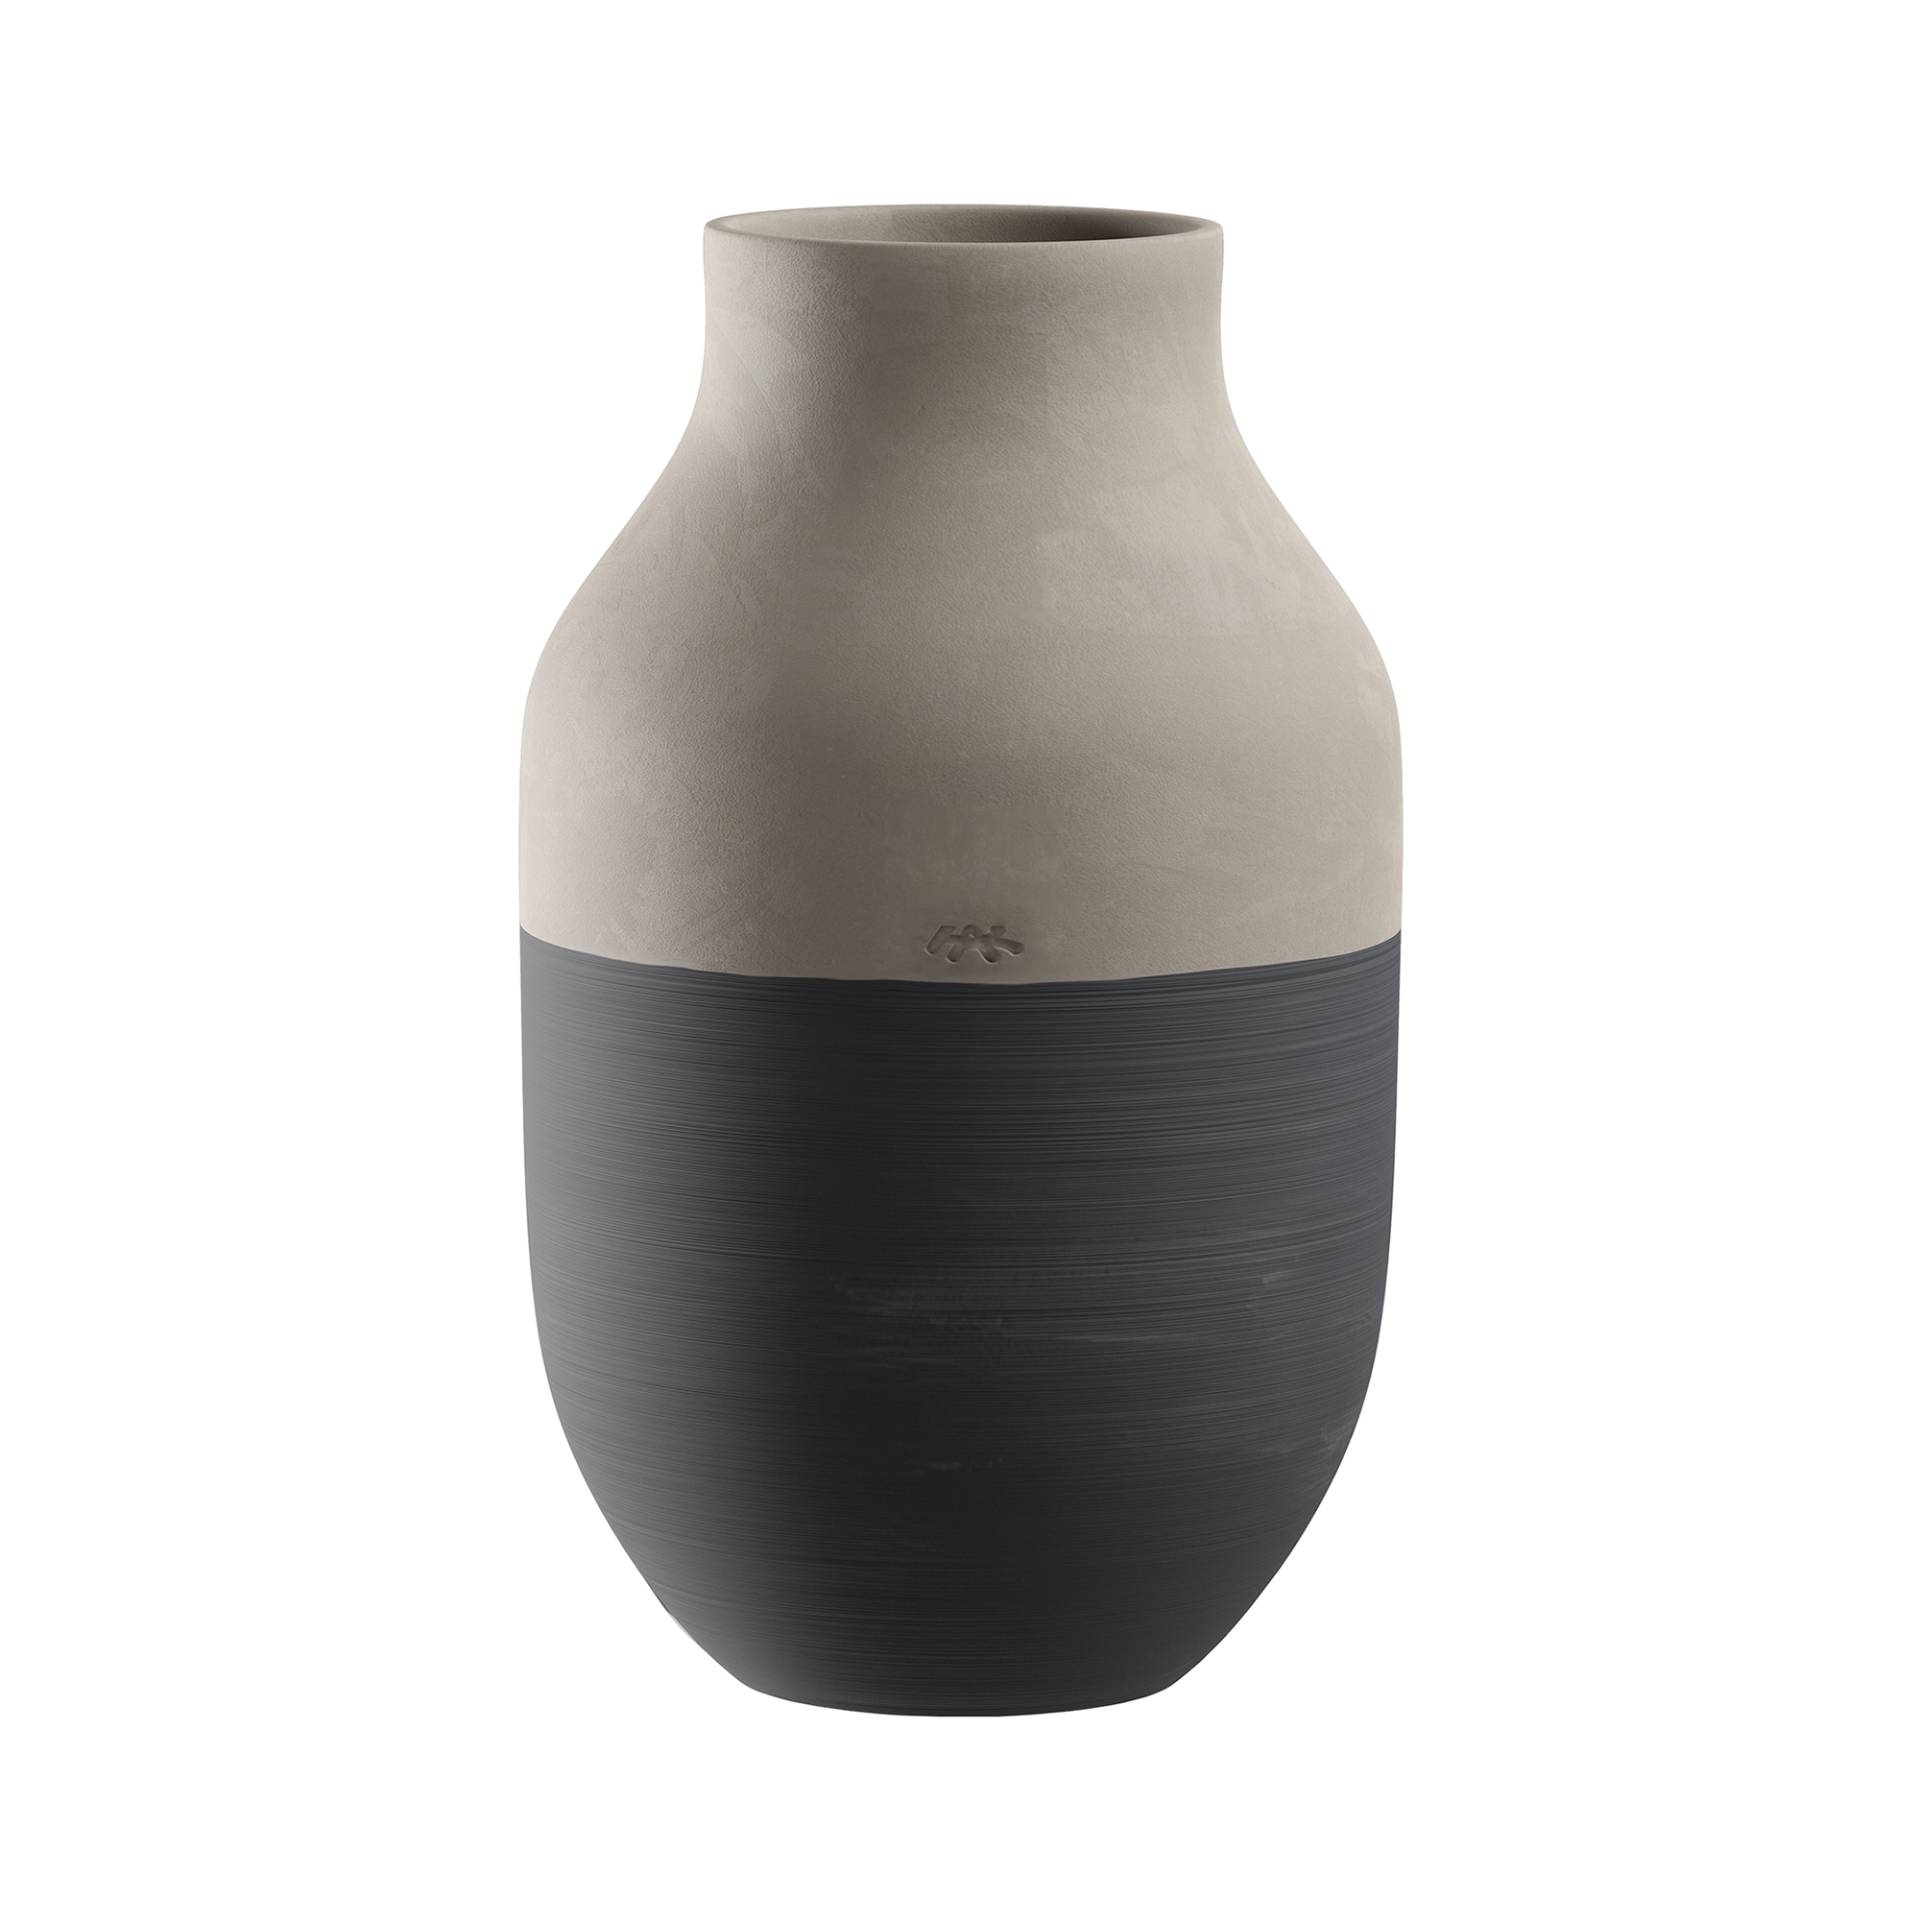 Kähler - Omaggio Circulare Vase H 31cm - anthrazit/hellgrau/H 31cm / Ø 19cm/Jedes Stück ein Unikat von Kähler